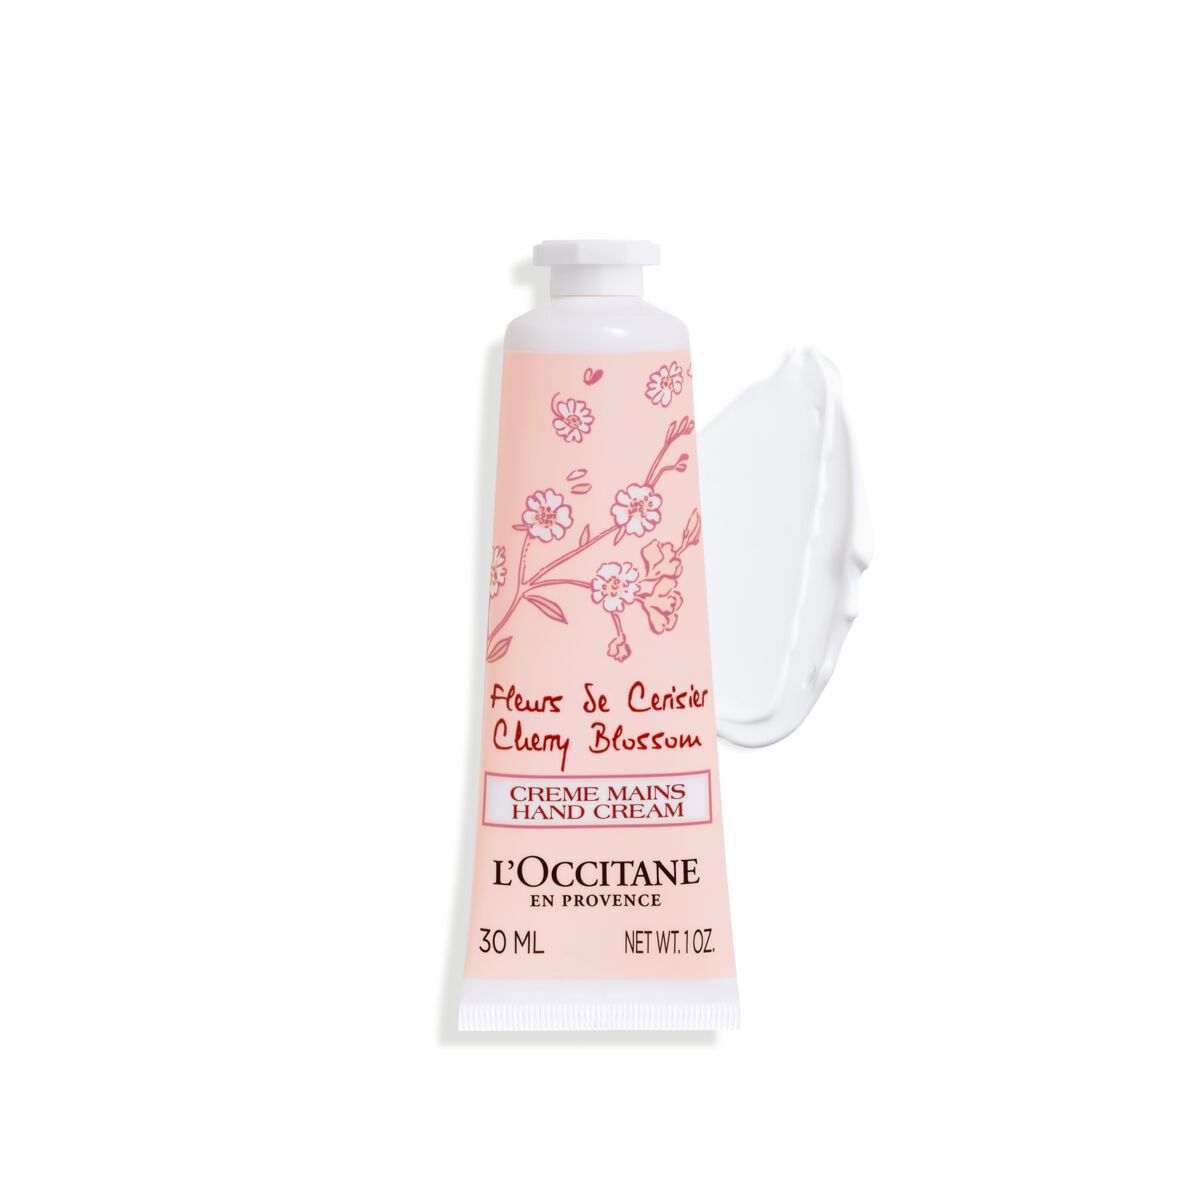 Crème Mains Fleurs de Cerisier 30ml - L'Occitane en Provence von L'Occitane en Provence